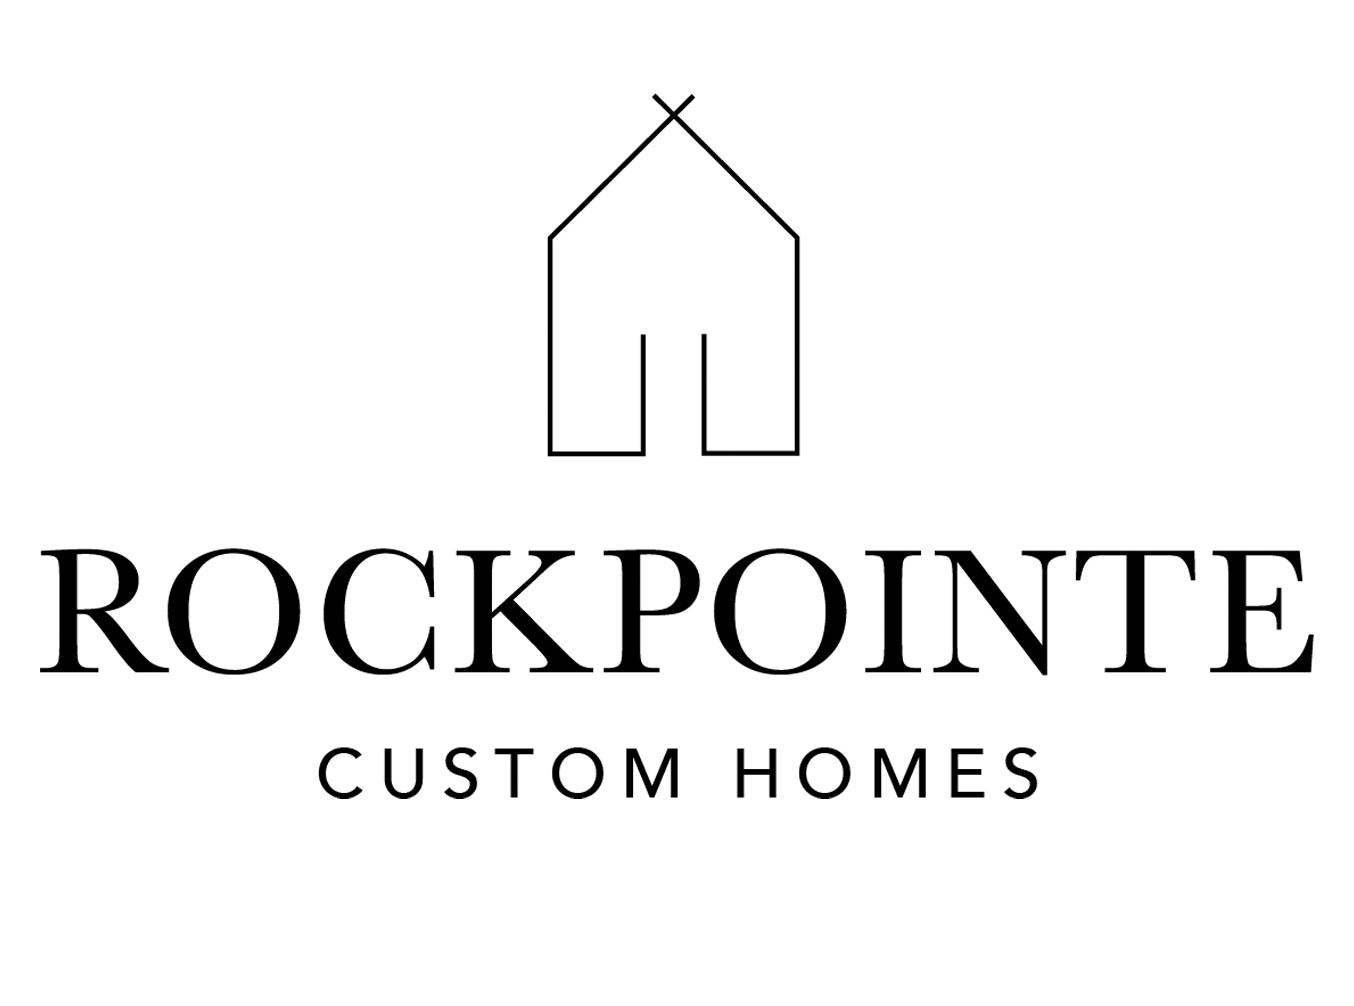 Rockpointe Custom Homes